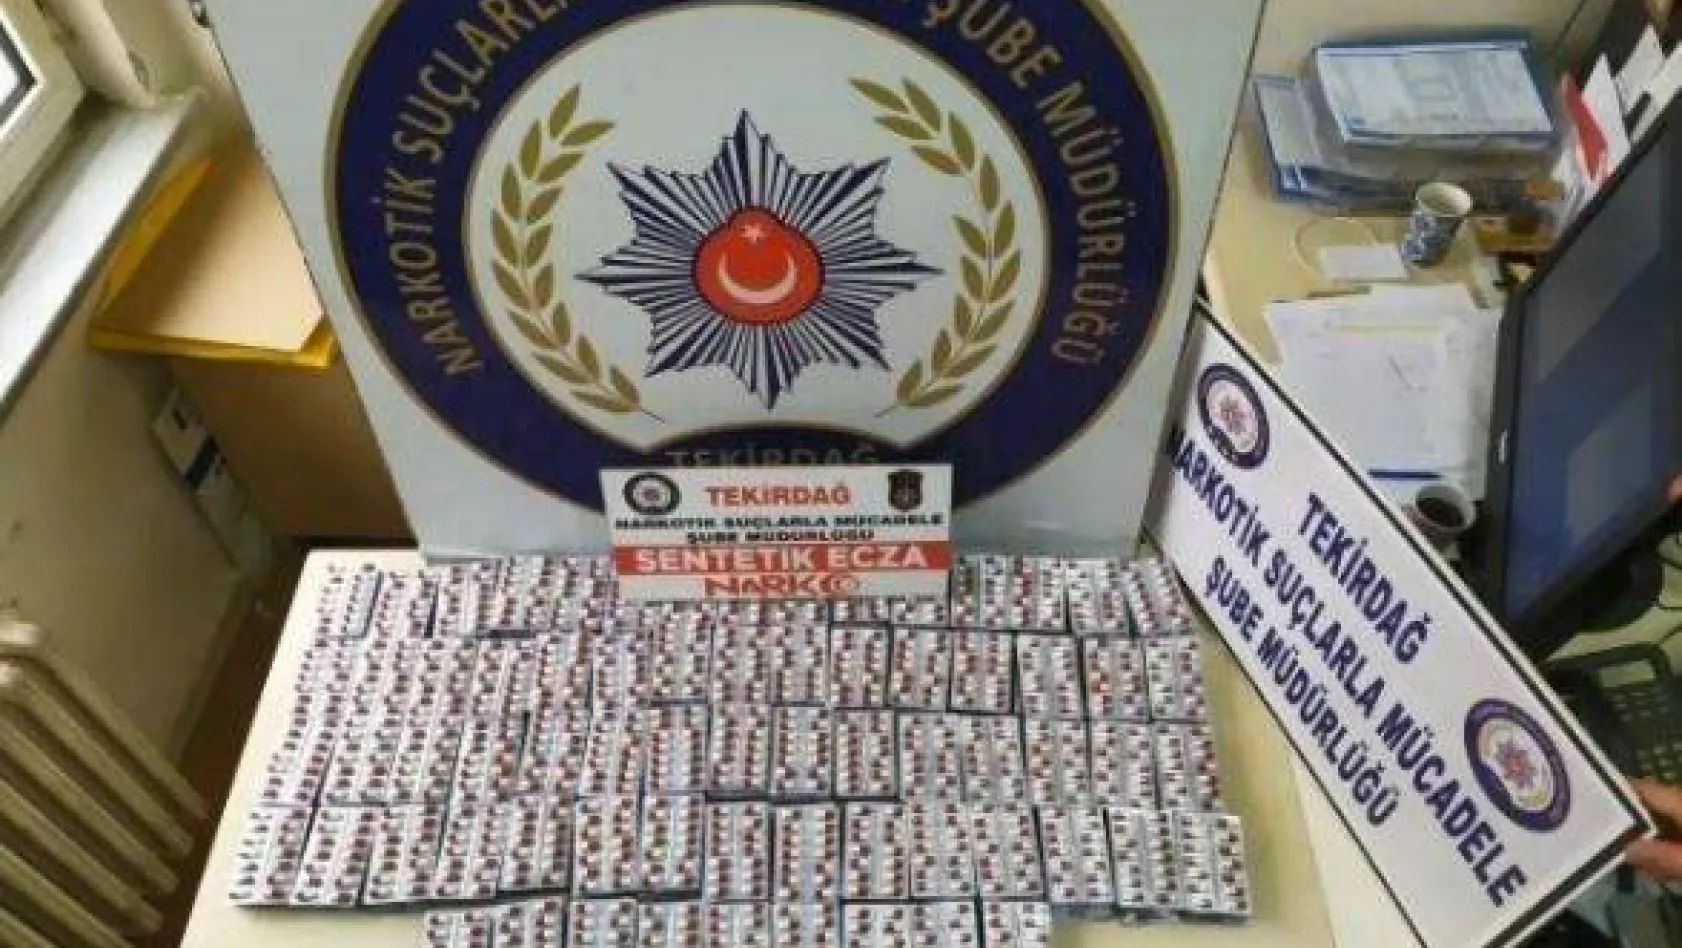 Tekirdağ'da 4 bin uyuşturucu hap ele geçirildi: 1 kişi tutuklandı